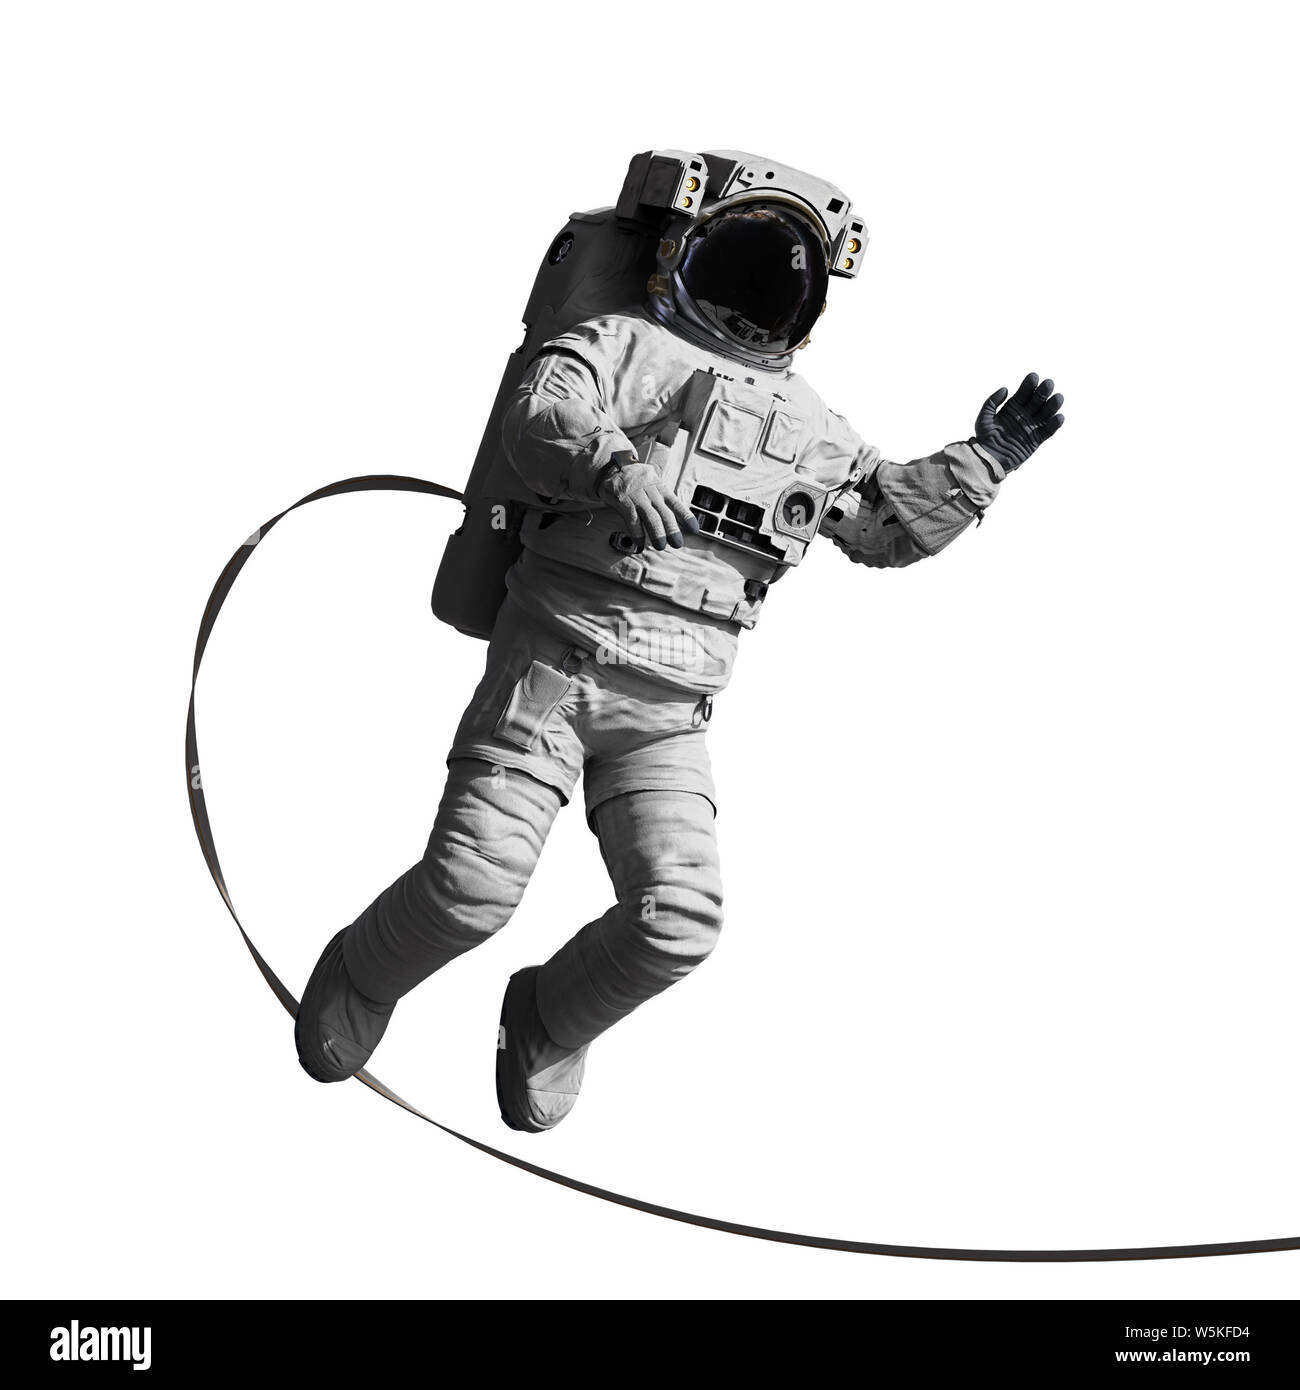 L'astronaute marcher dans l'espace, isolé sur fond blanc Banque D'Images